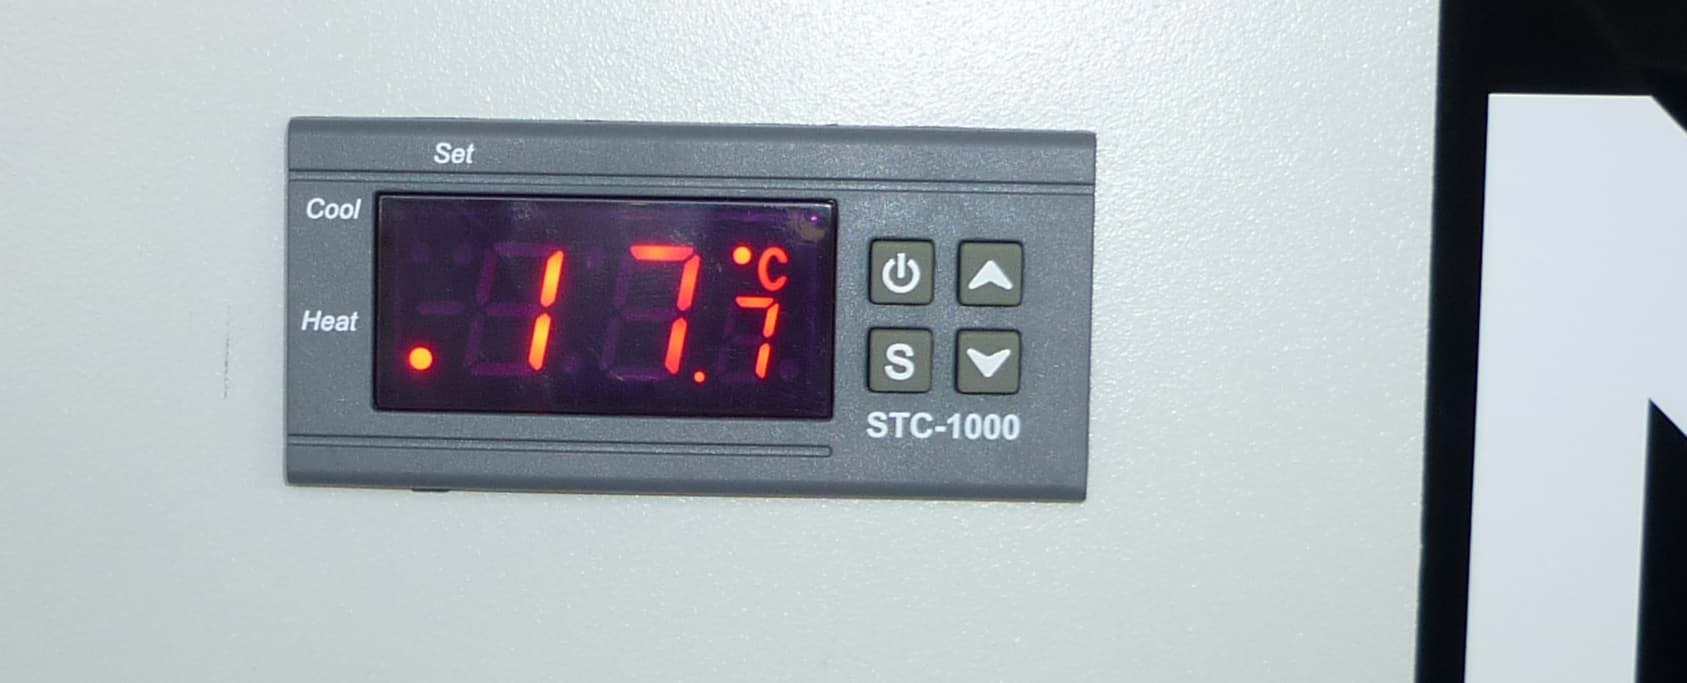 In der Serverschranktür implementiert die digitale Temperaturanzeige